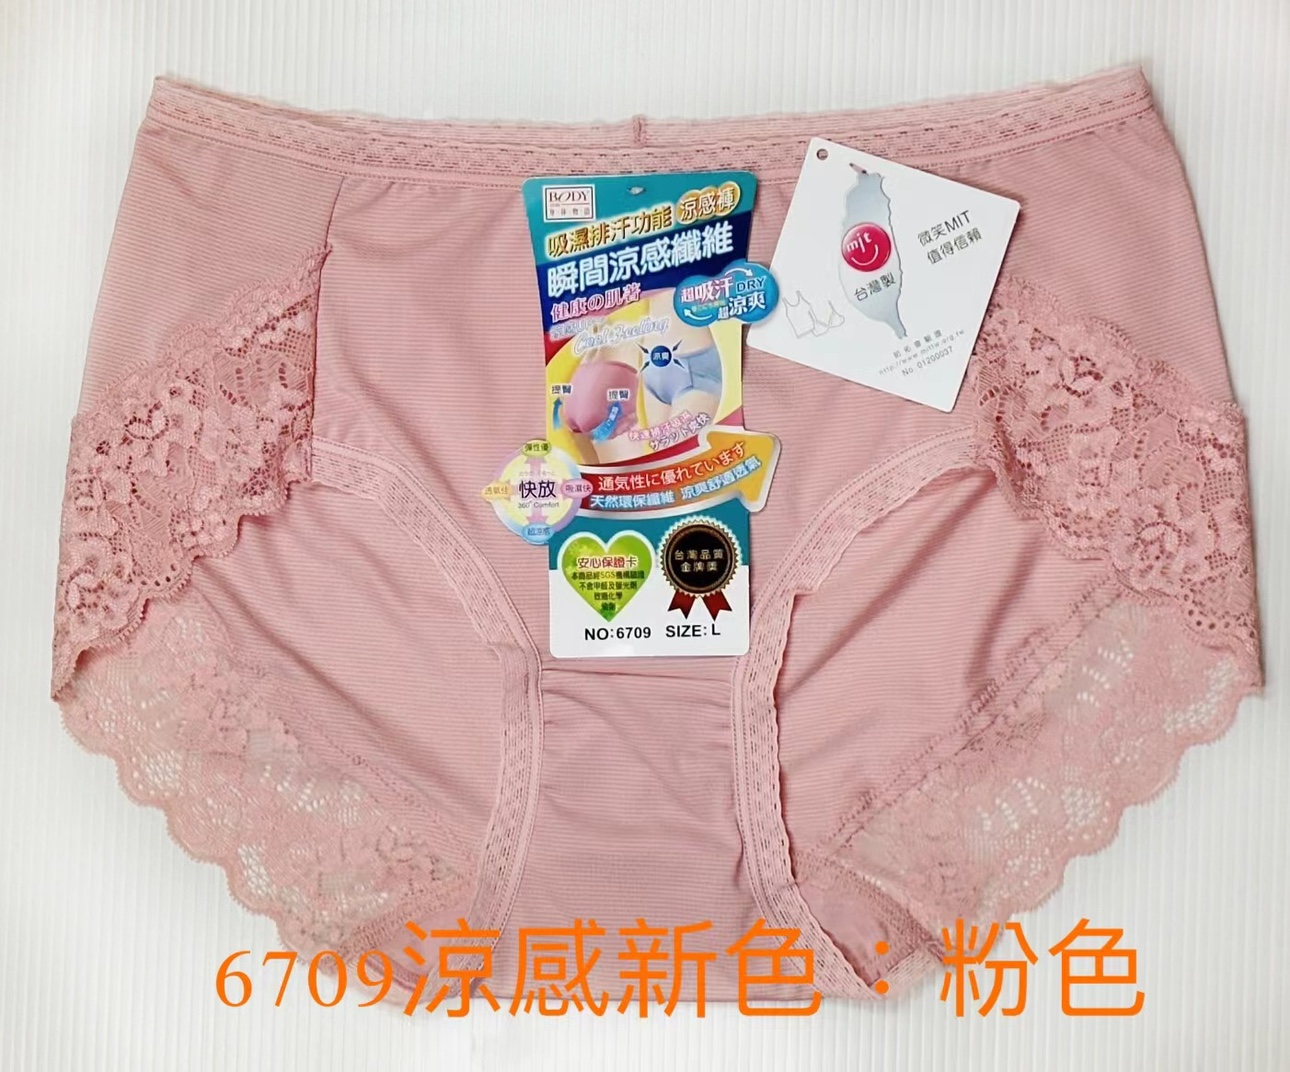 【雪之川】台湾正品凉感内裤两条包邮无痕舒适透气品质金牌内裤